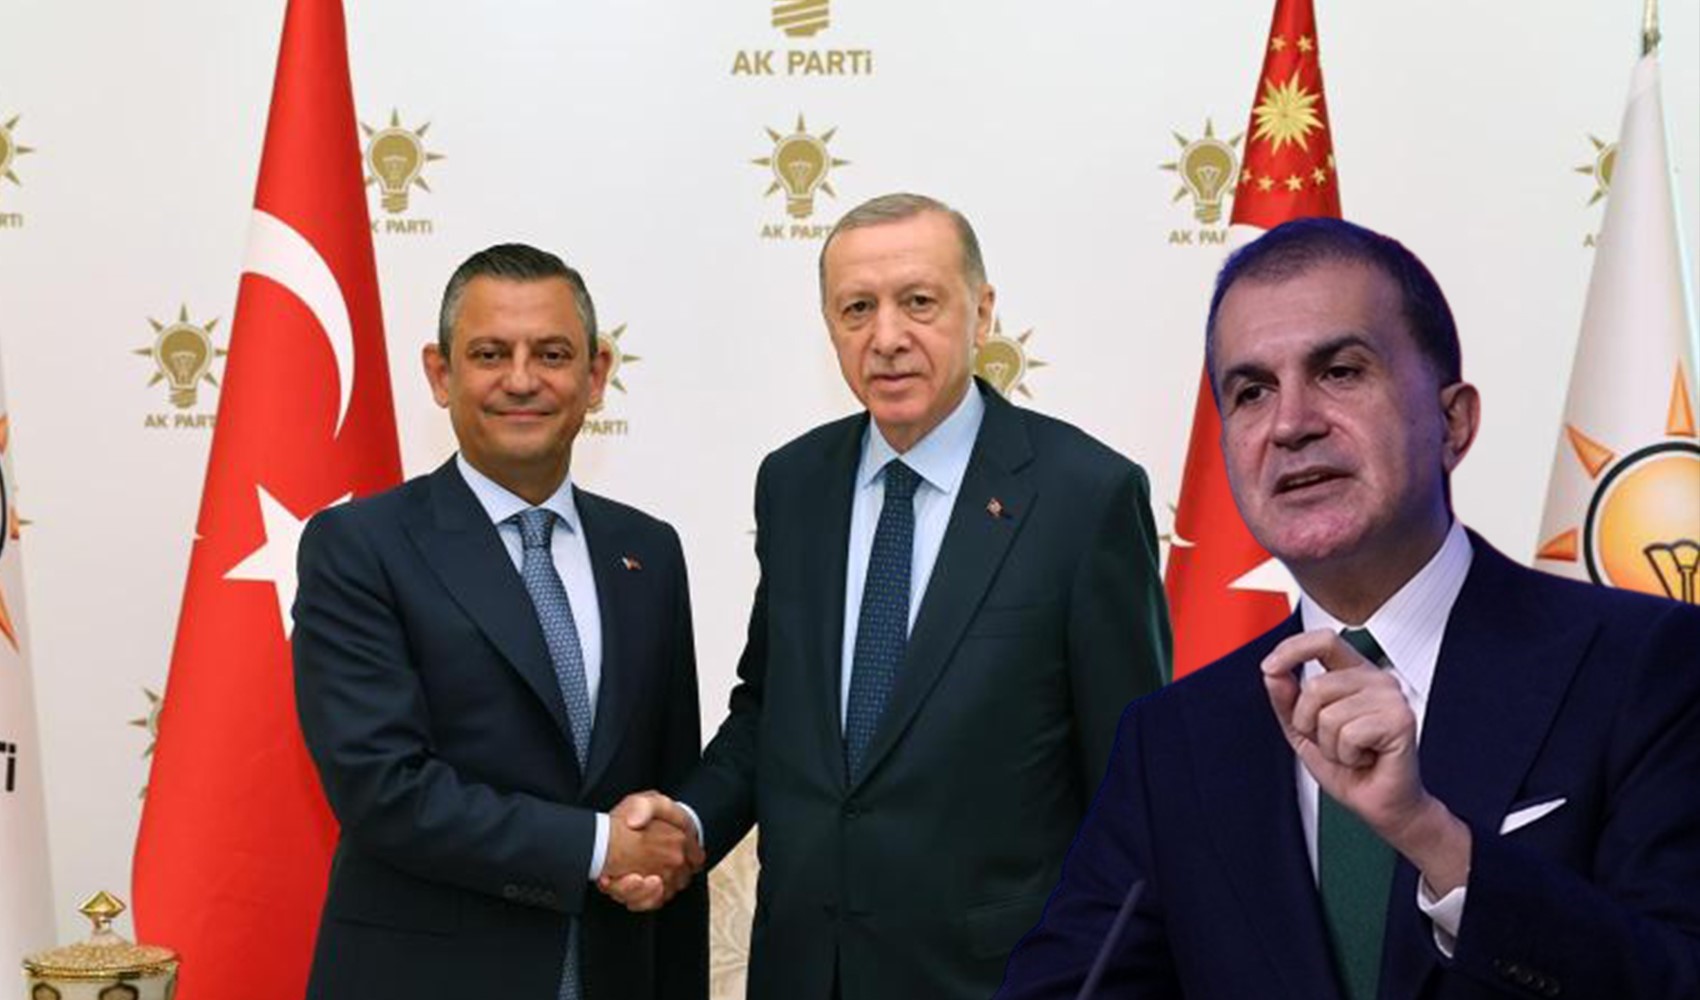 AKP'den görüşme sonrası ilk açıklama: 'Memnun olduk'